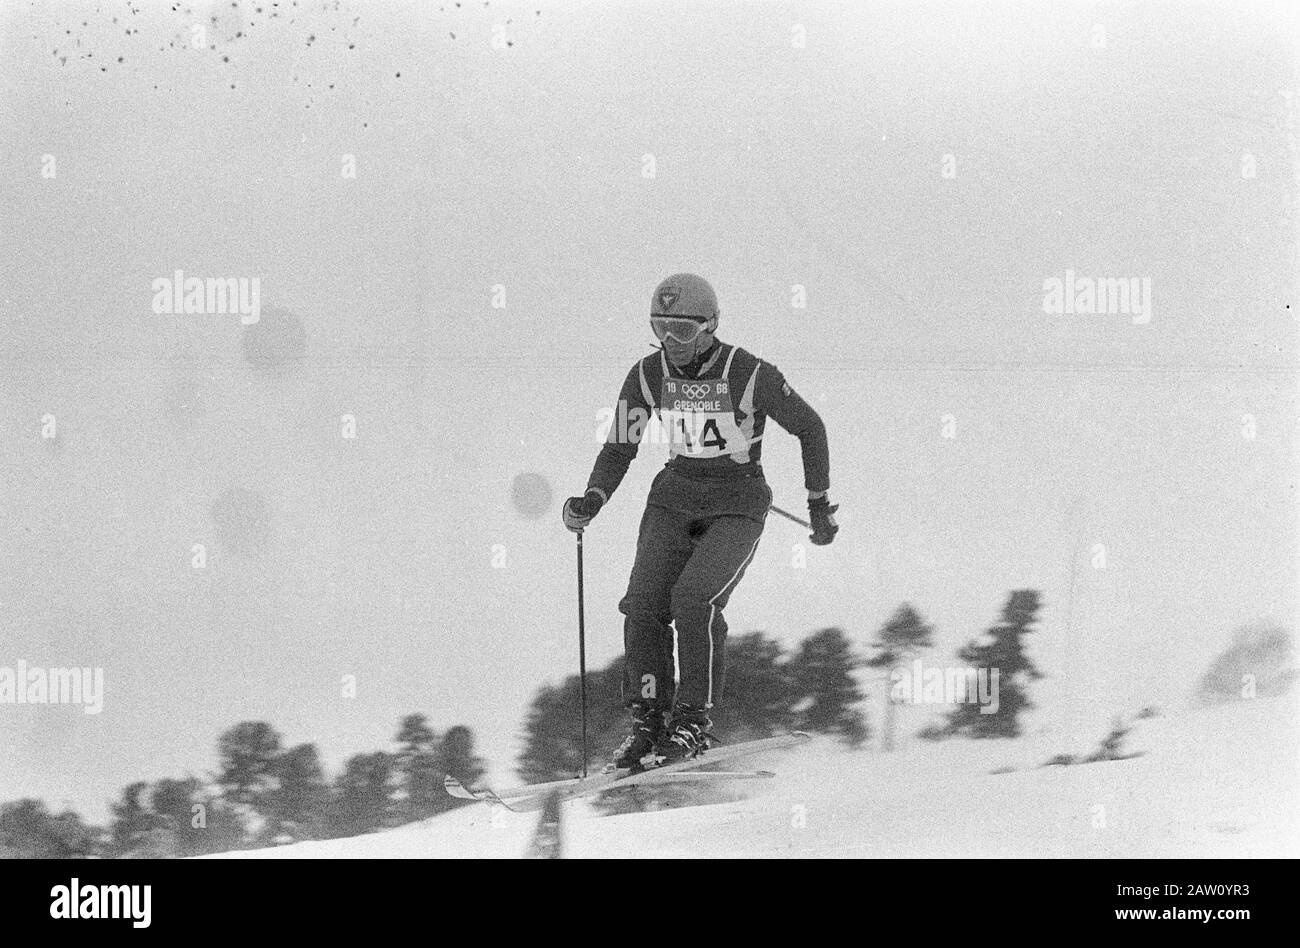 Olimpiadi, il francese Killy in azione a sci di fondo (discesa) Data: 7 febbraio 1968 Parole Chiave: Sci Foto Stock